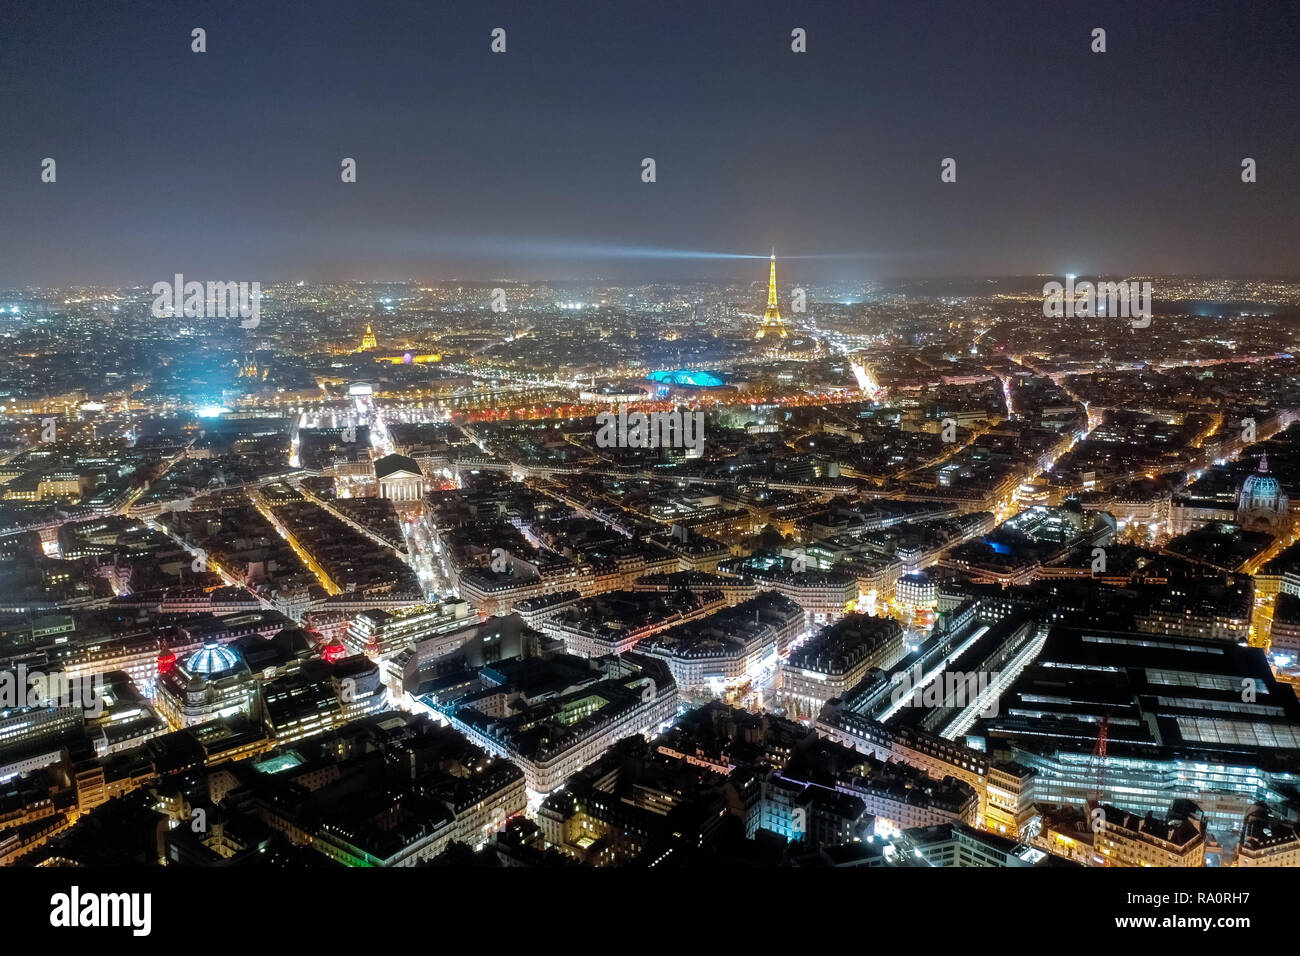 Vista aérea de la ciudad de París por la noche. Hermosas vistas al horizonte de la ciudad y monumentos famosos, iluminado con luz en la oscuridad de la noche en París, Francia Foto de stock